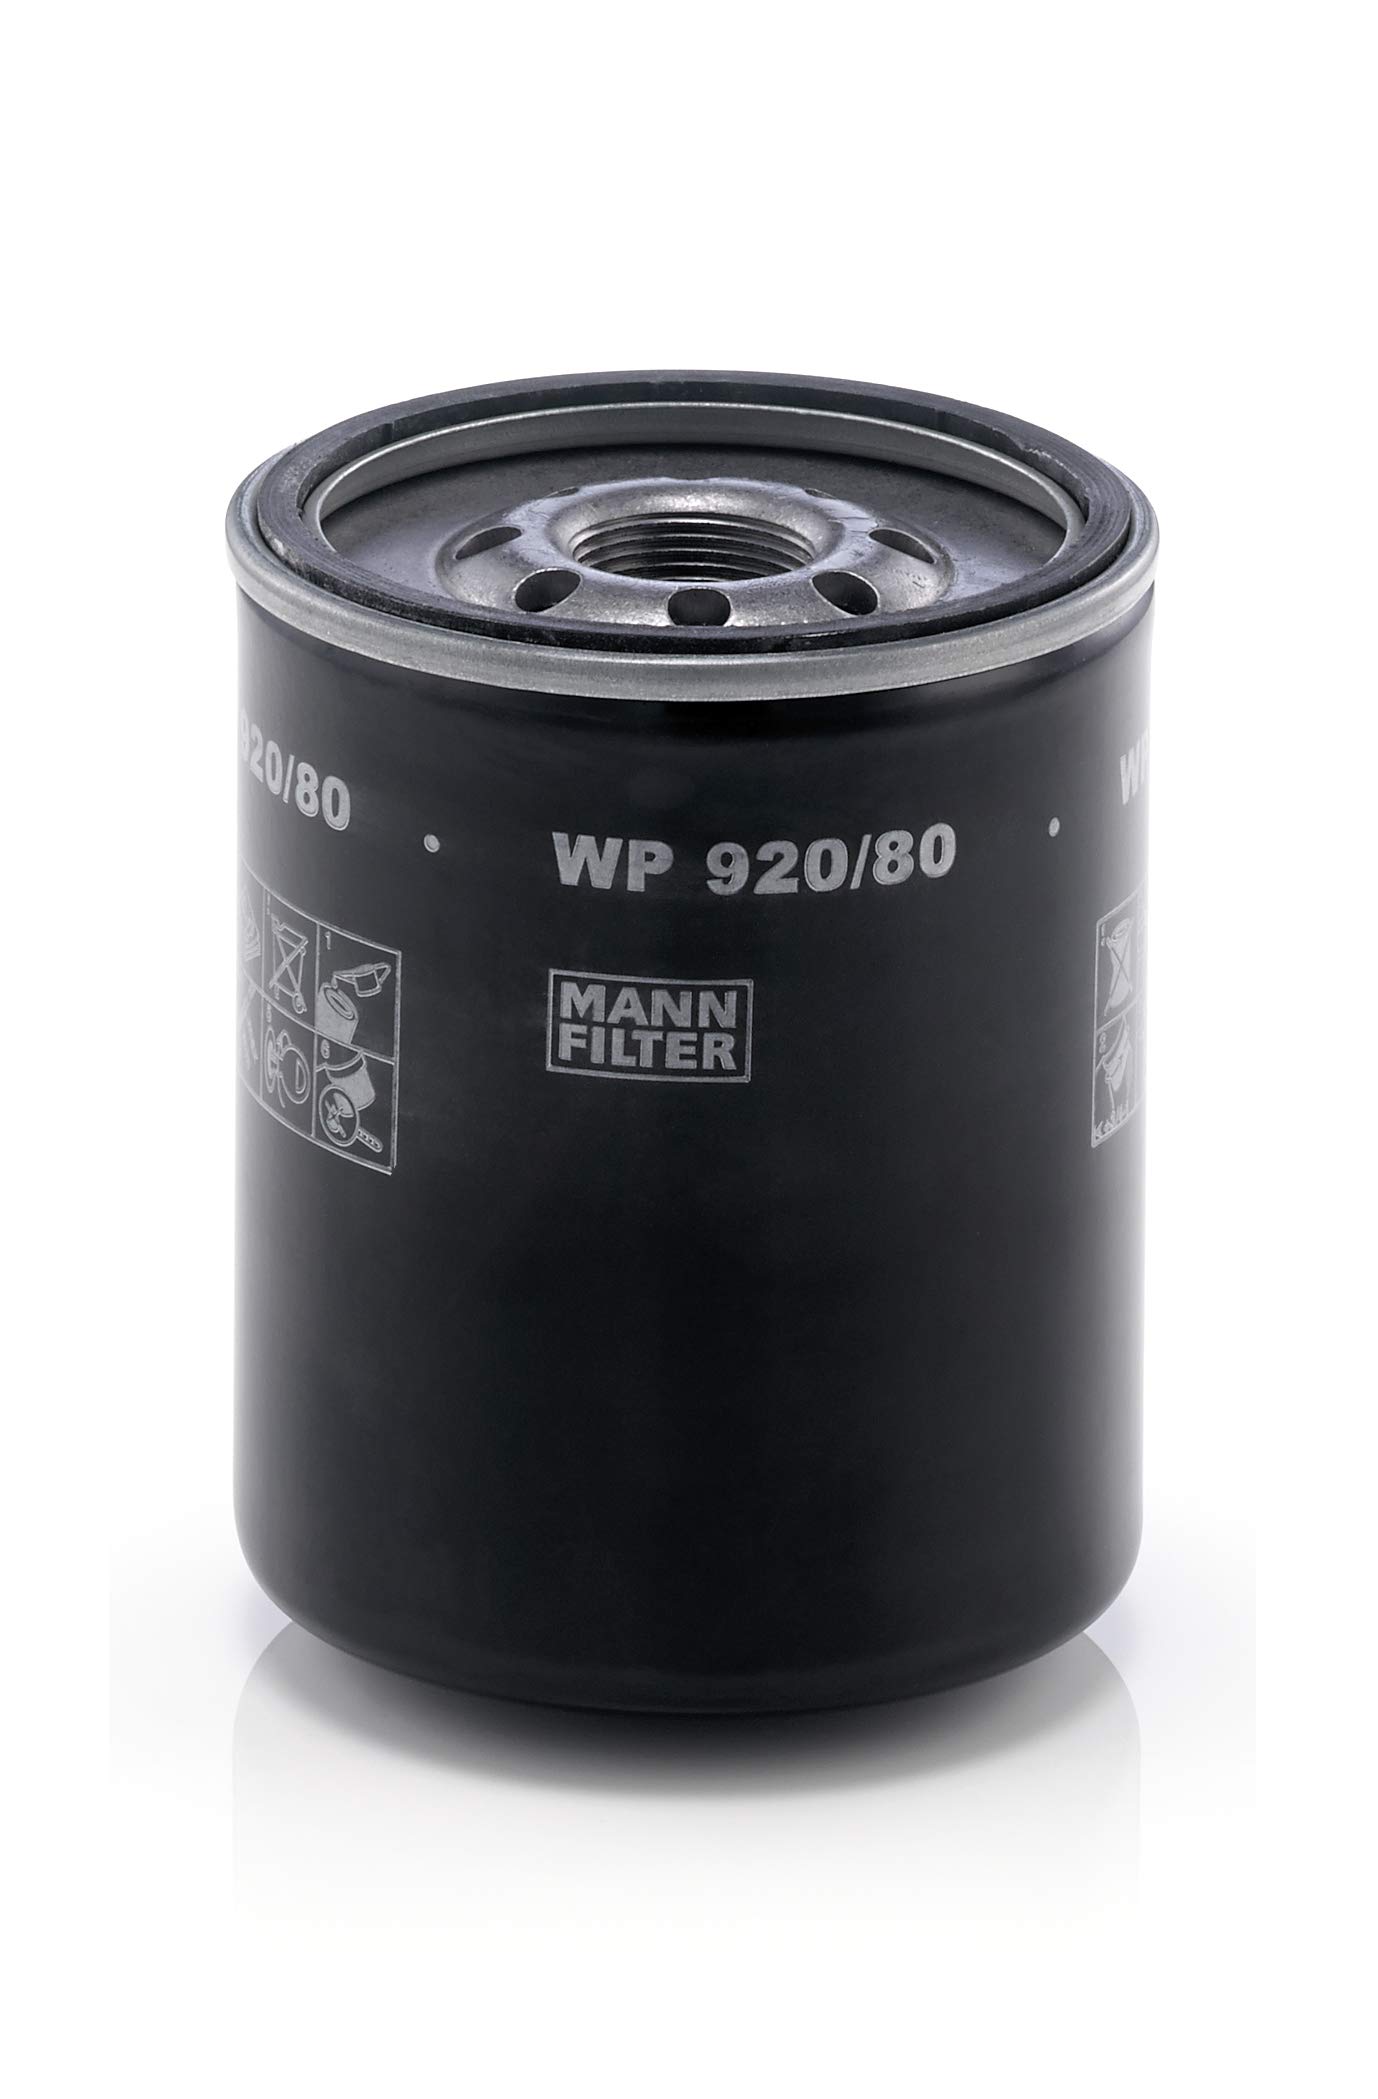 MANN-FILTER WP 920/80 Ölfilter – Für PKW von MANN-FILTER